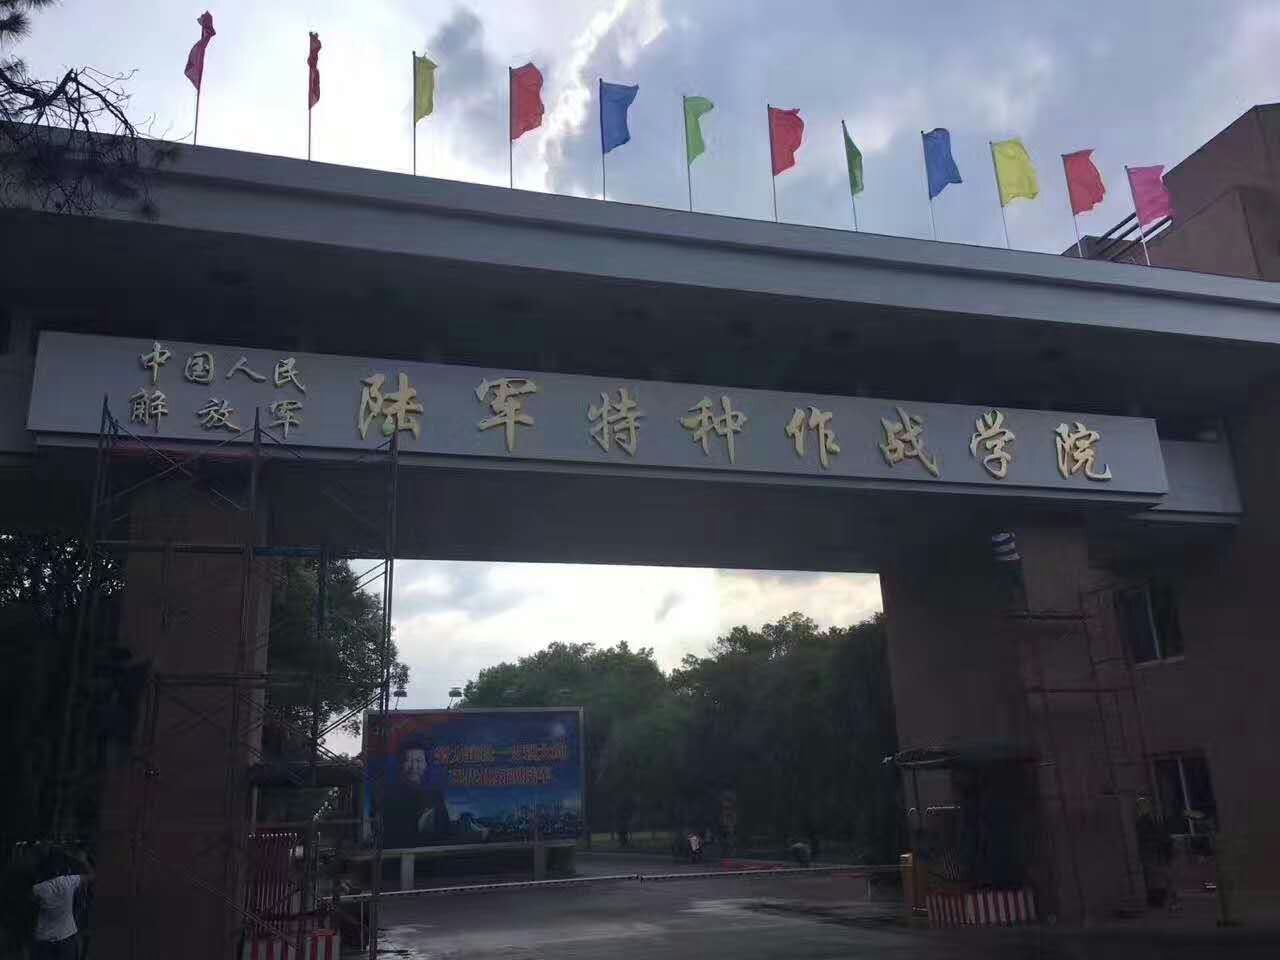 中國人民解放軍陸軍特種作戰學院(解放軍體育學院)